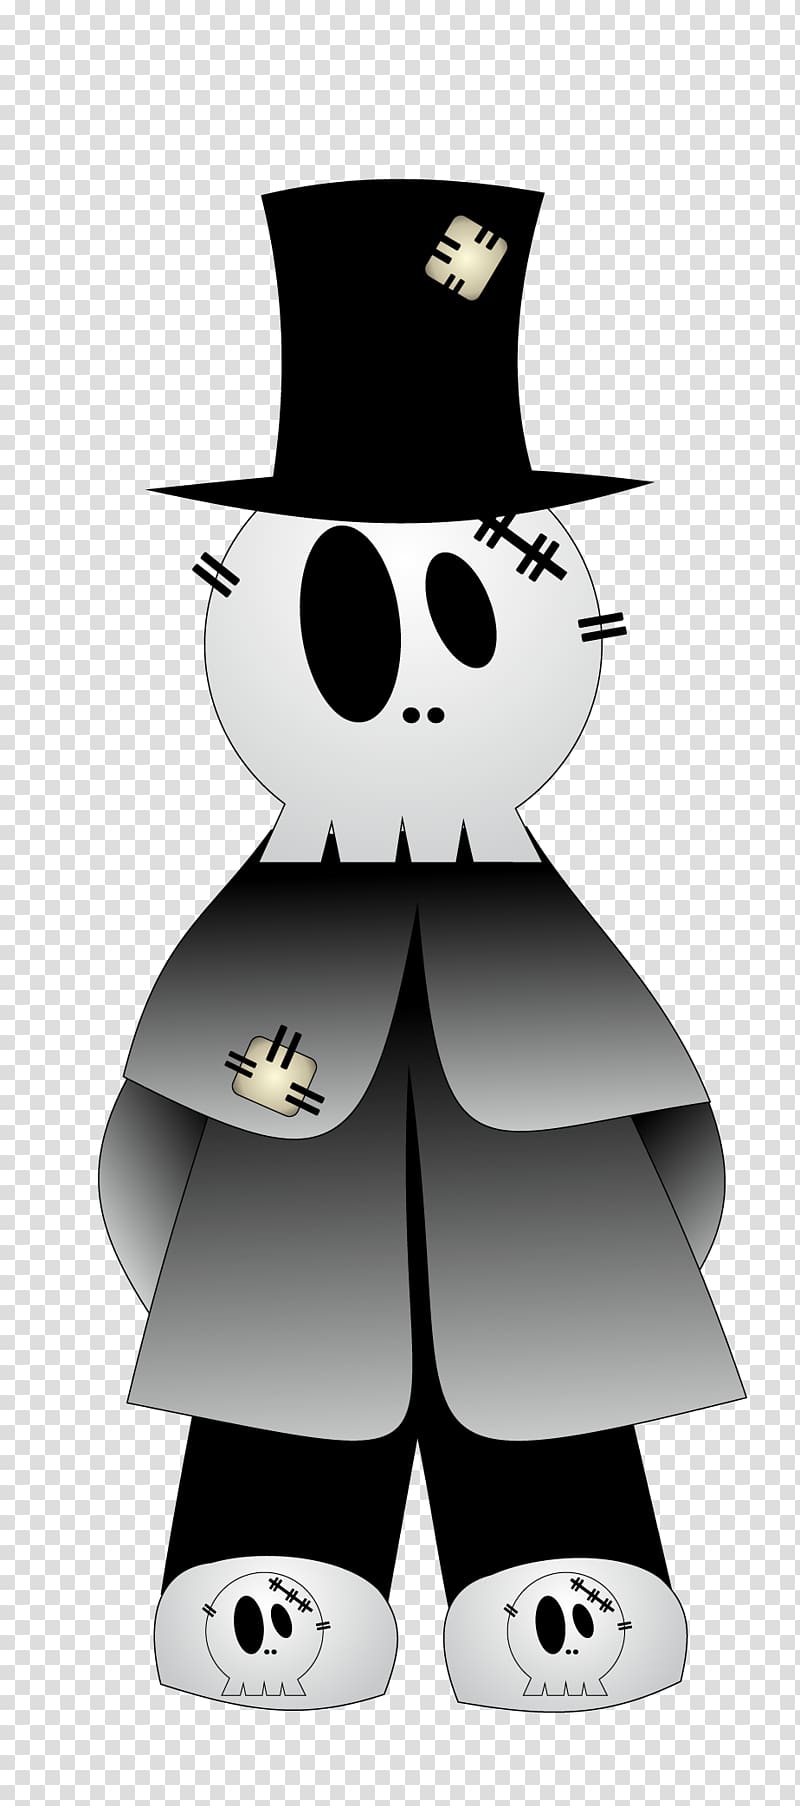 Halloween Spooktacular Jack-o-lantern , black demon transparent background PNG clipart